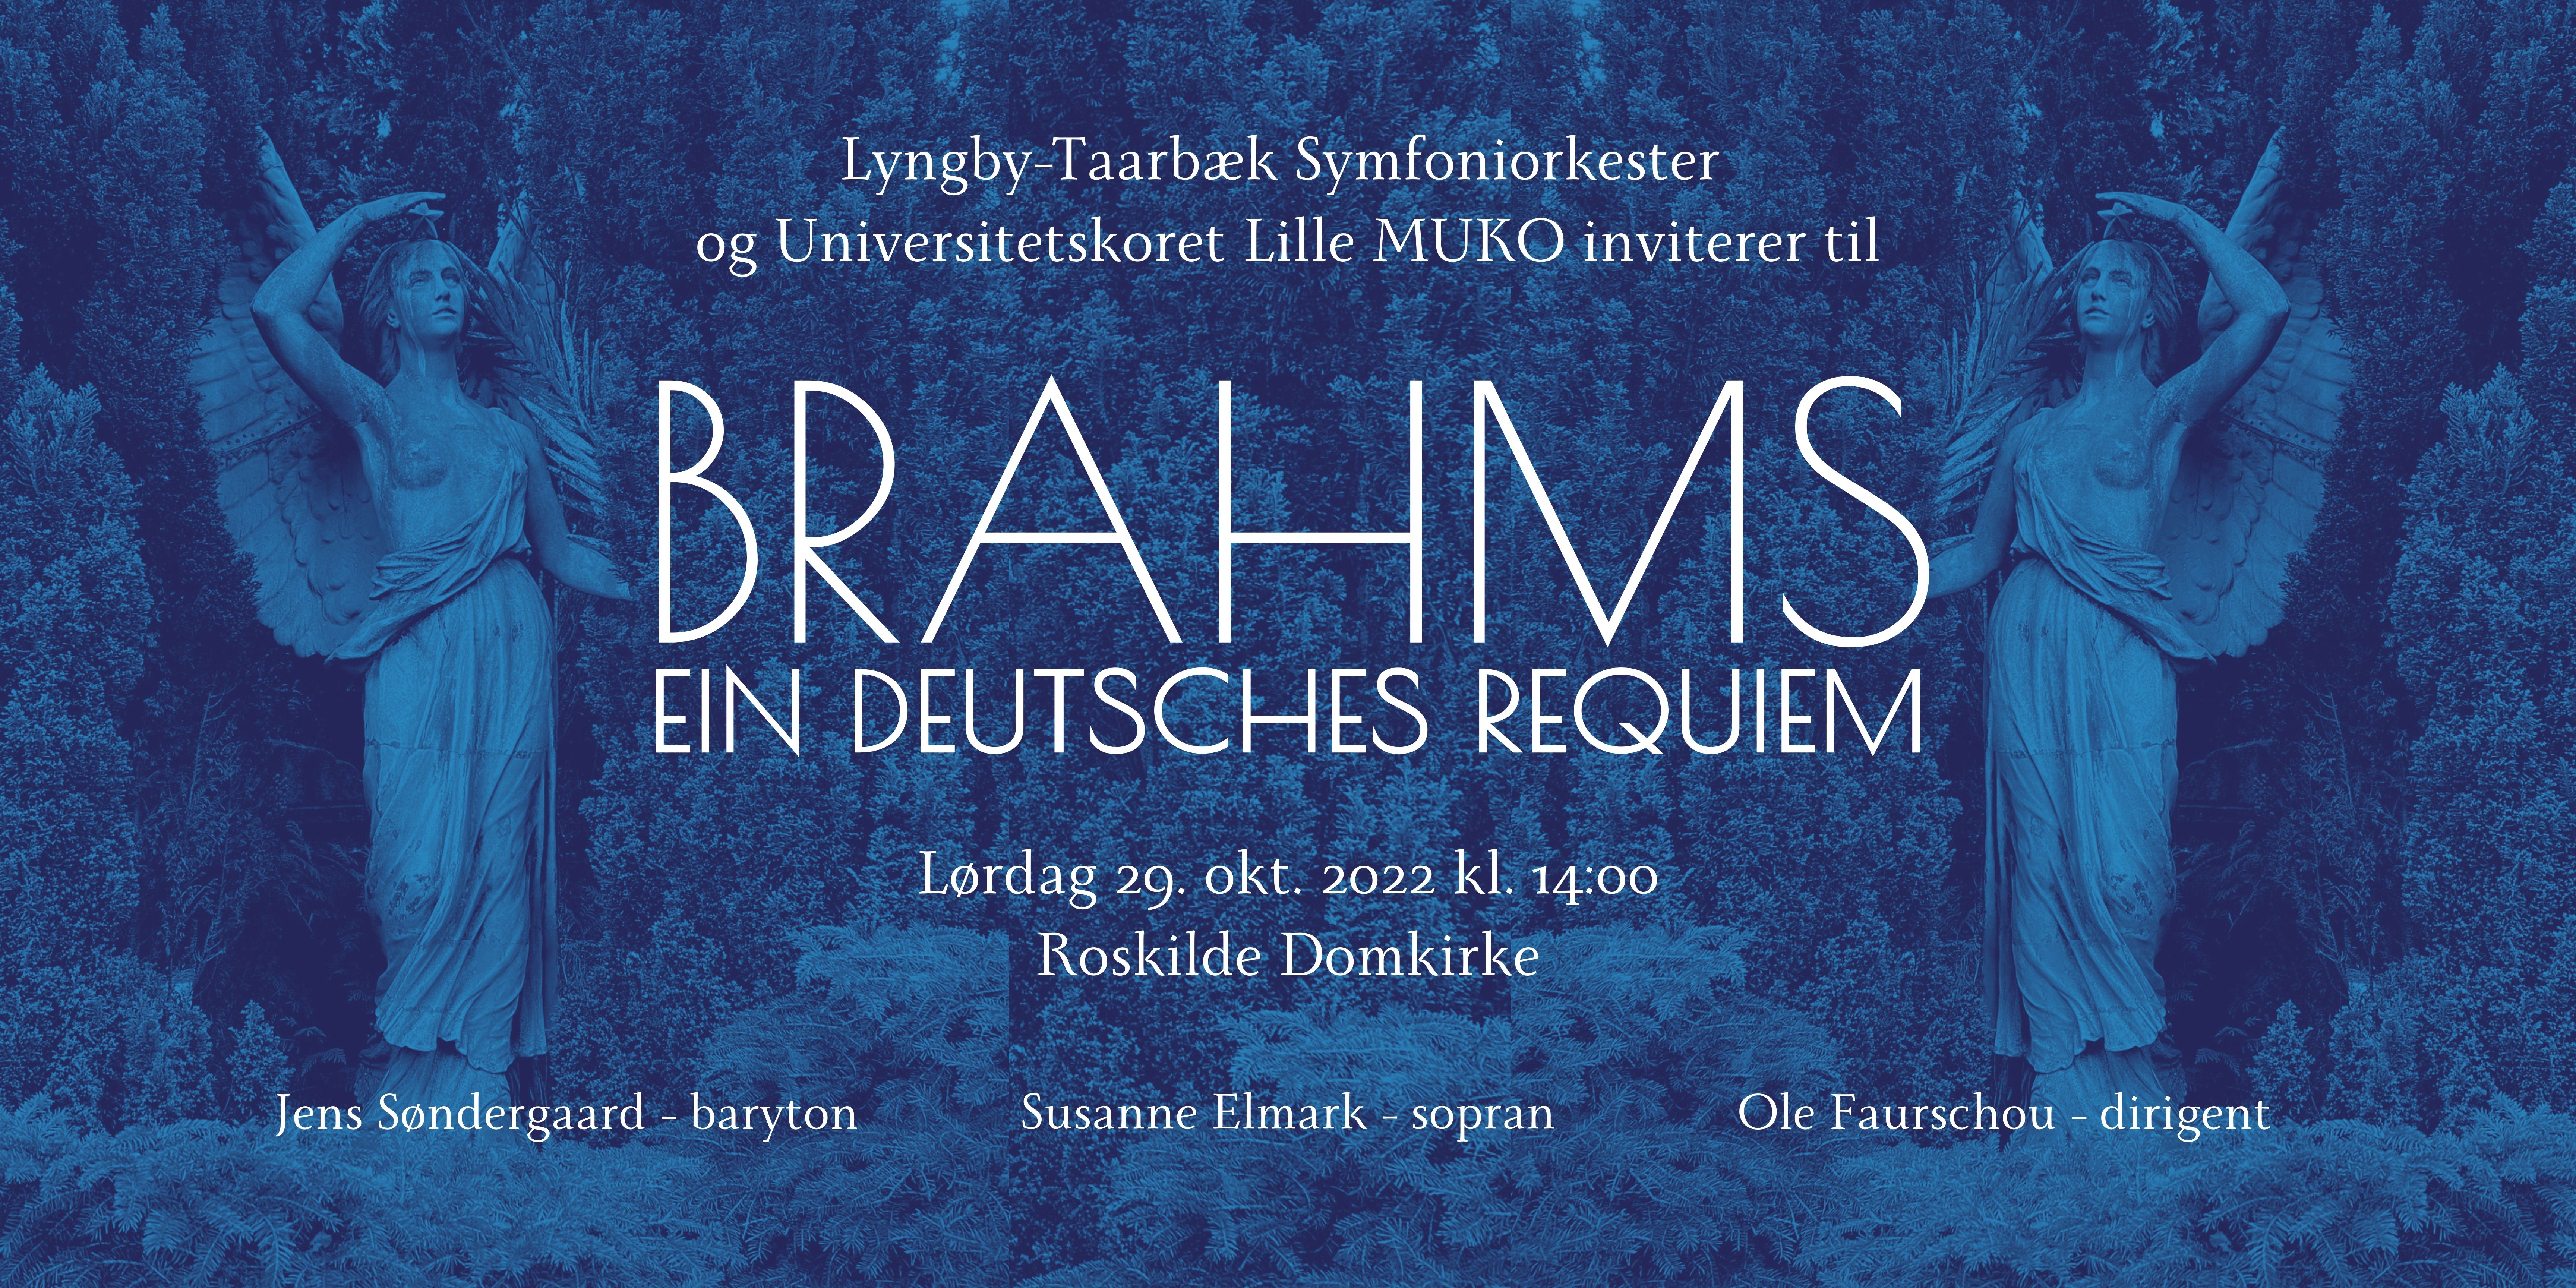 Universitetskoret Lille MUKO og Lyngby-Taarbæk Symfoniorkester præsenterer Brahms Ein Deutsches Requiem!